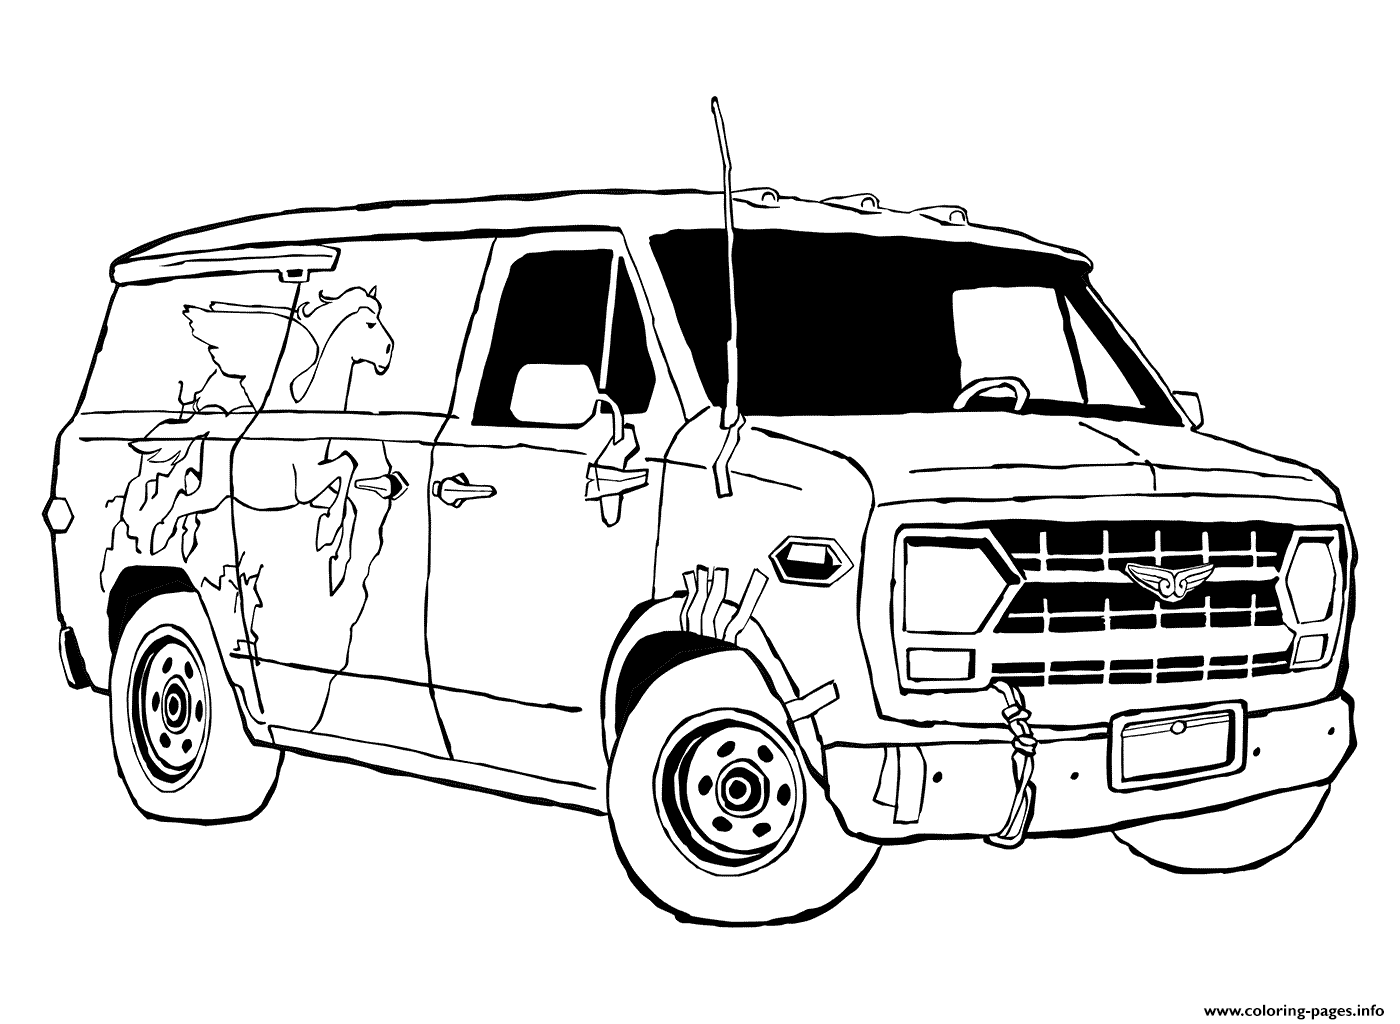 Van From Onward coloring